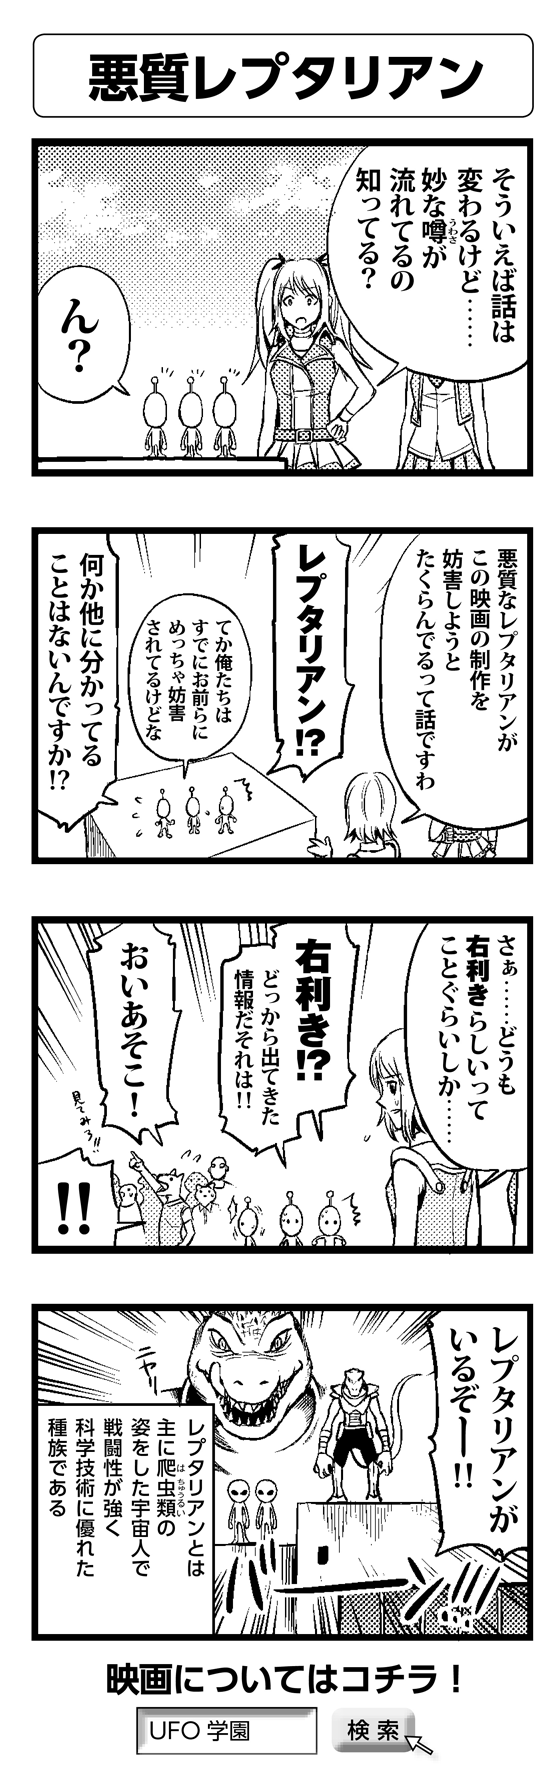 悪質レプタリアン - 四コマ漫画ノンフィクション #017